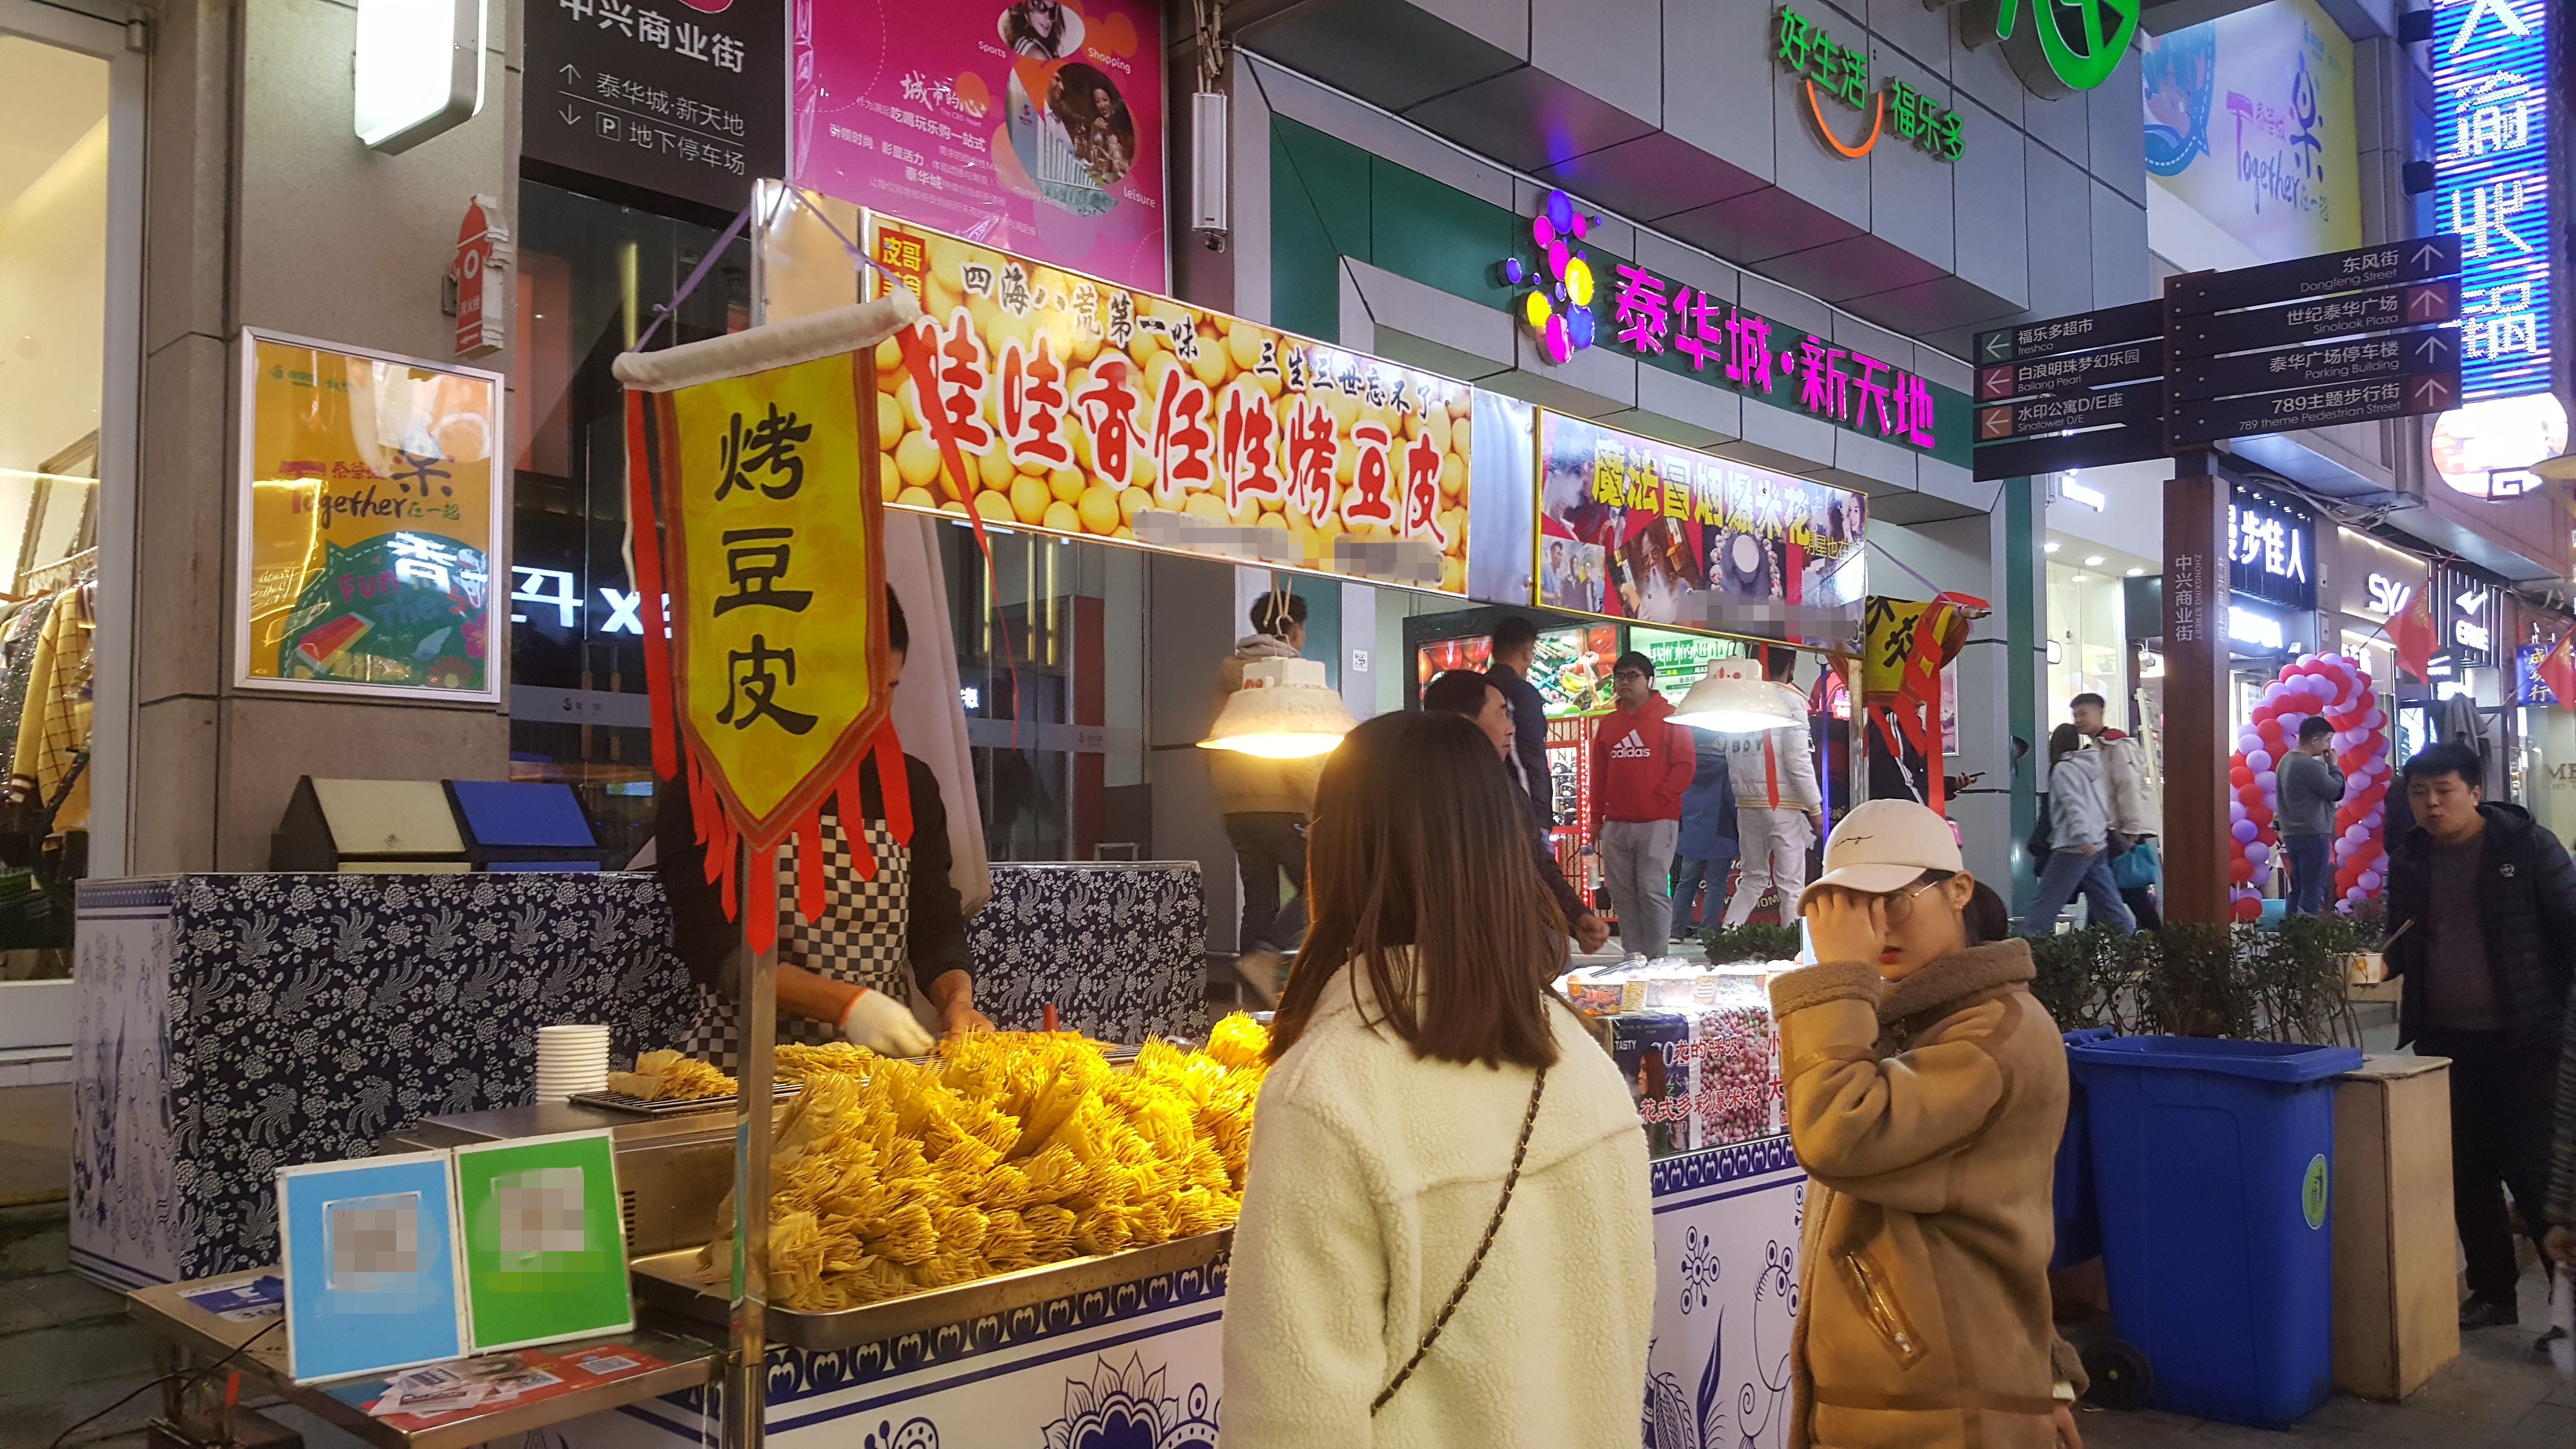 潍坊:随拍泰华步行街的24味特色小吃,今天终于知道花甲粉是啥了